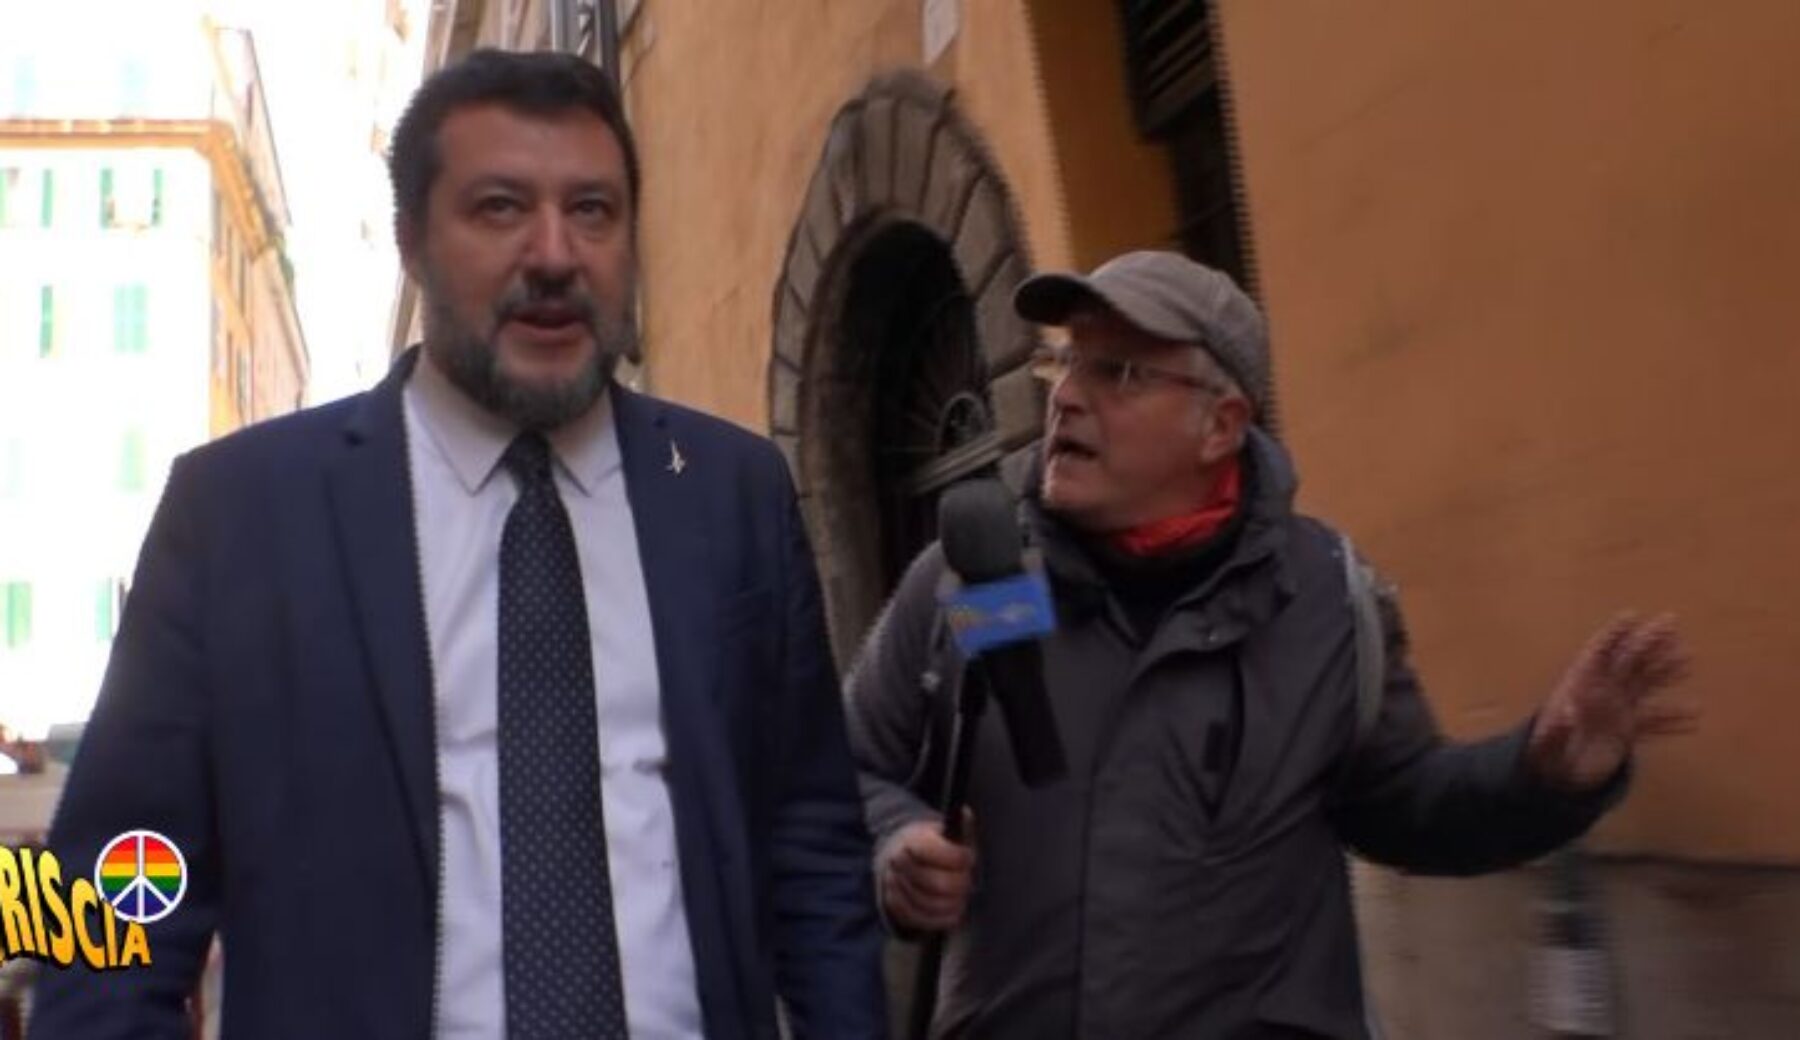 Enrico Lucci senza pace: “Ma Matteo Salvini, perché non twitti più?”